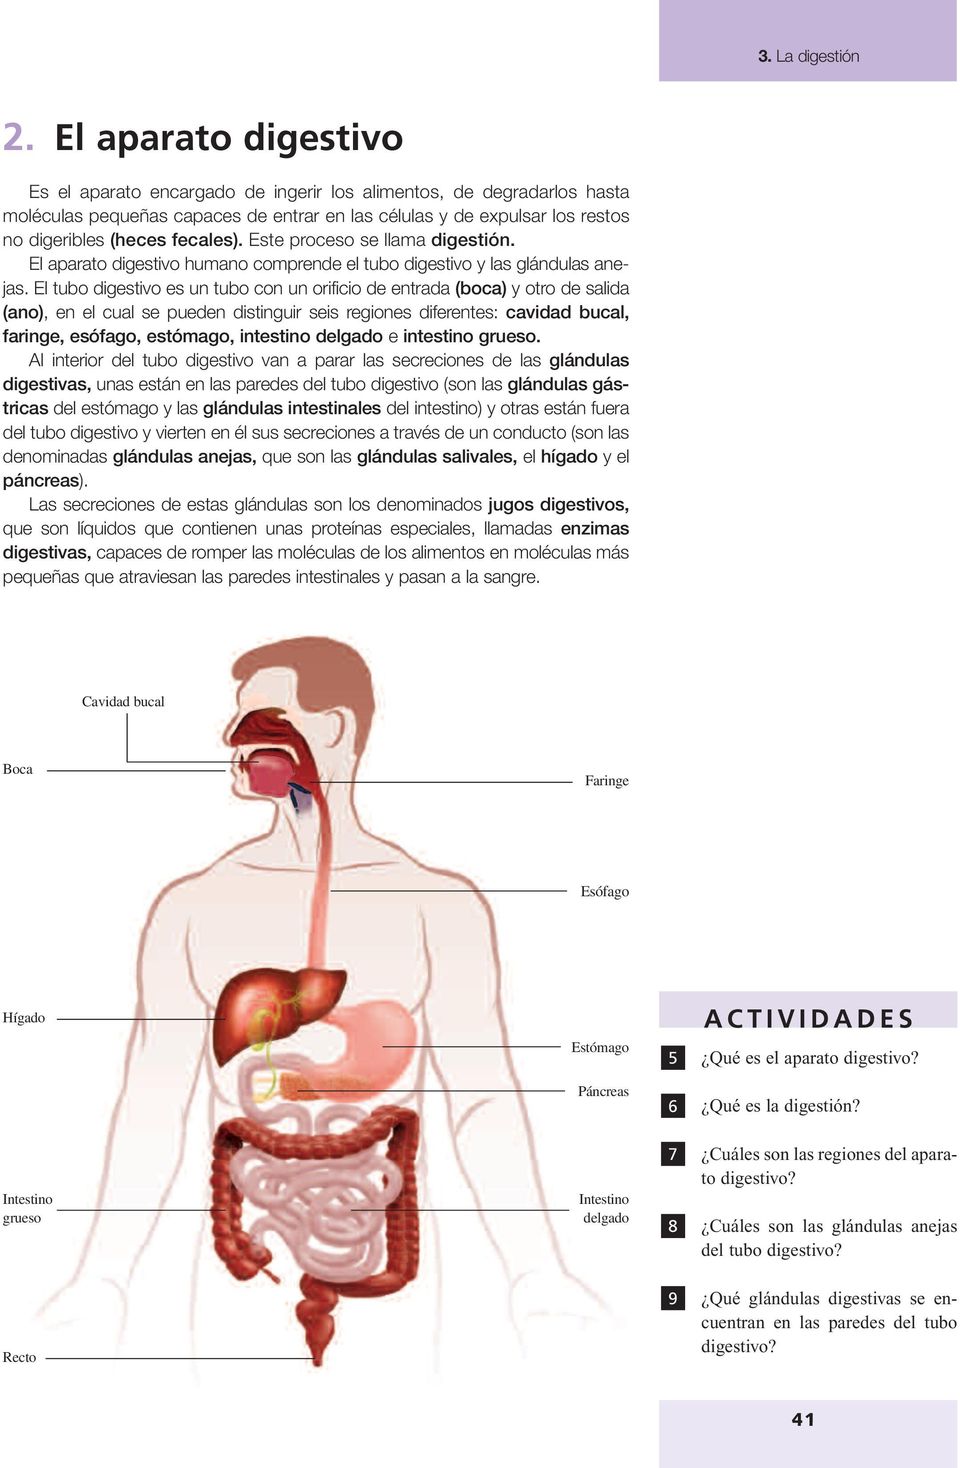 El tubo digestivo es un tubo con un orificio de entrada (boca) y otro de salida (ano), en el cual se pueden distinguir seis regiones diferentes: cavidad bucal, faringe, esófago, estómago, intestino